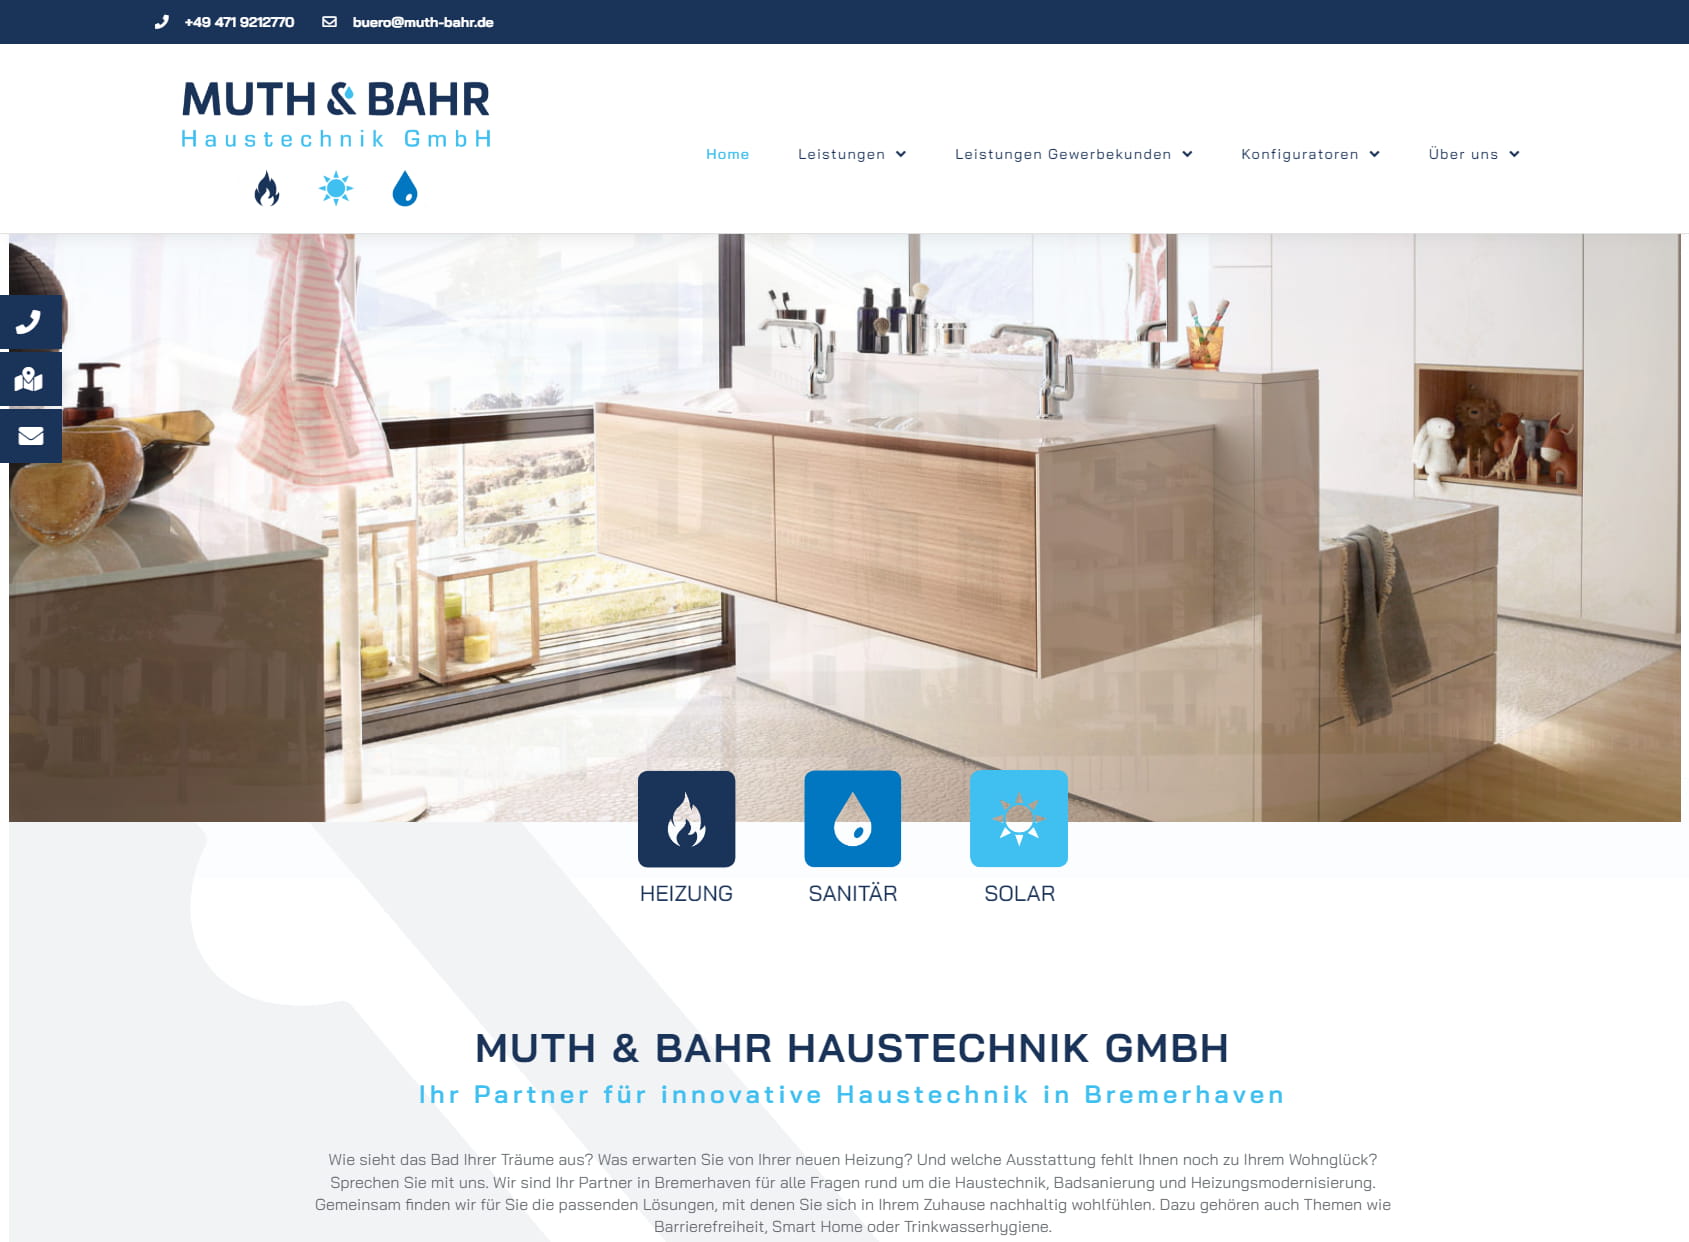 Muth & Bahr Haustechnik GmbH